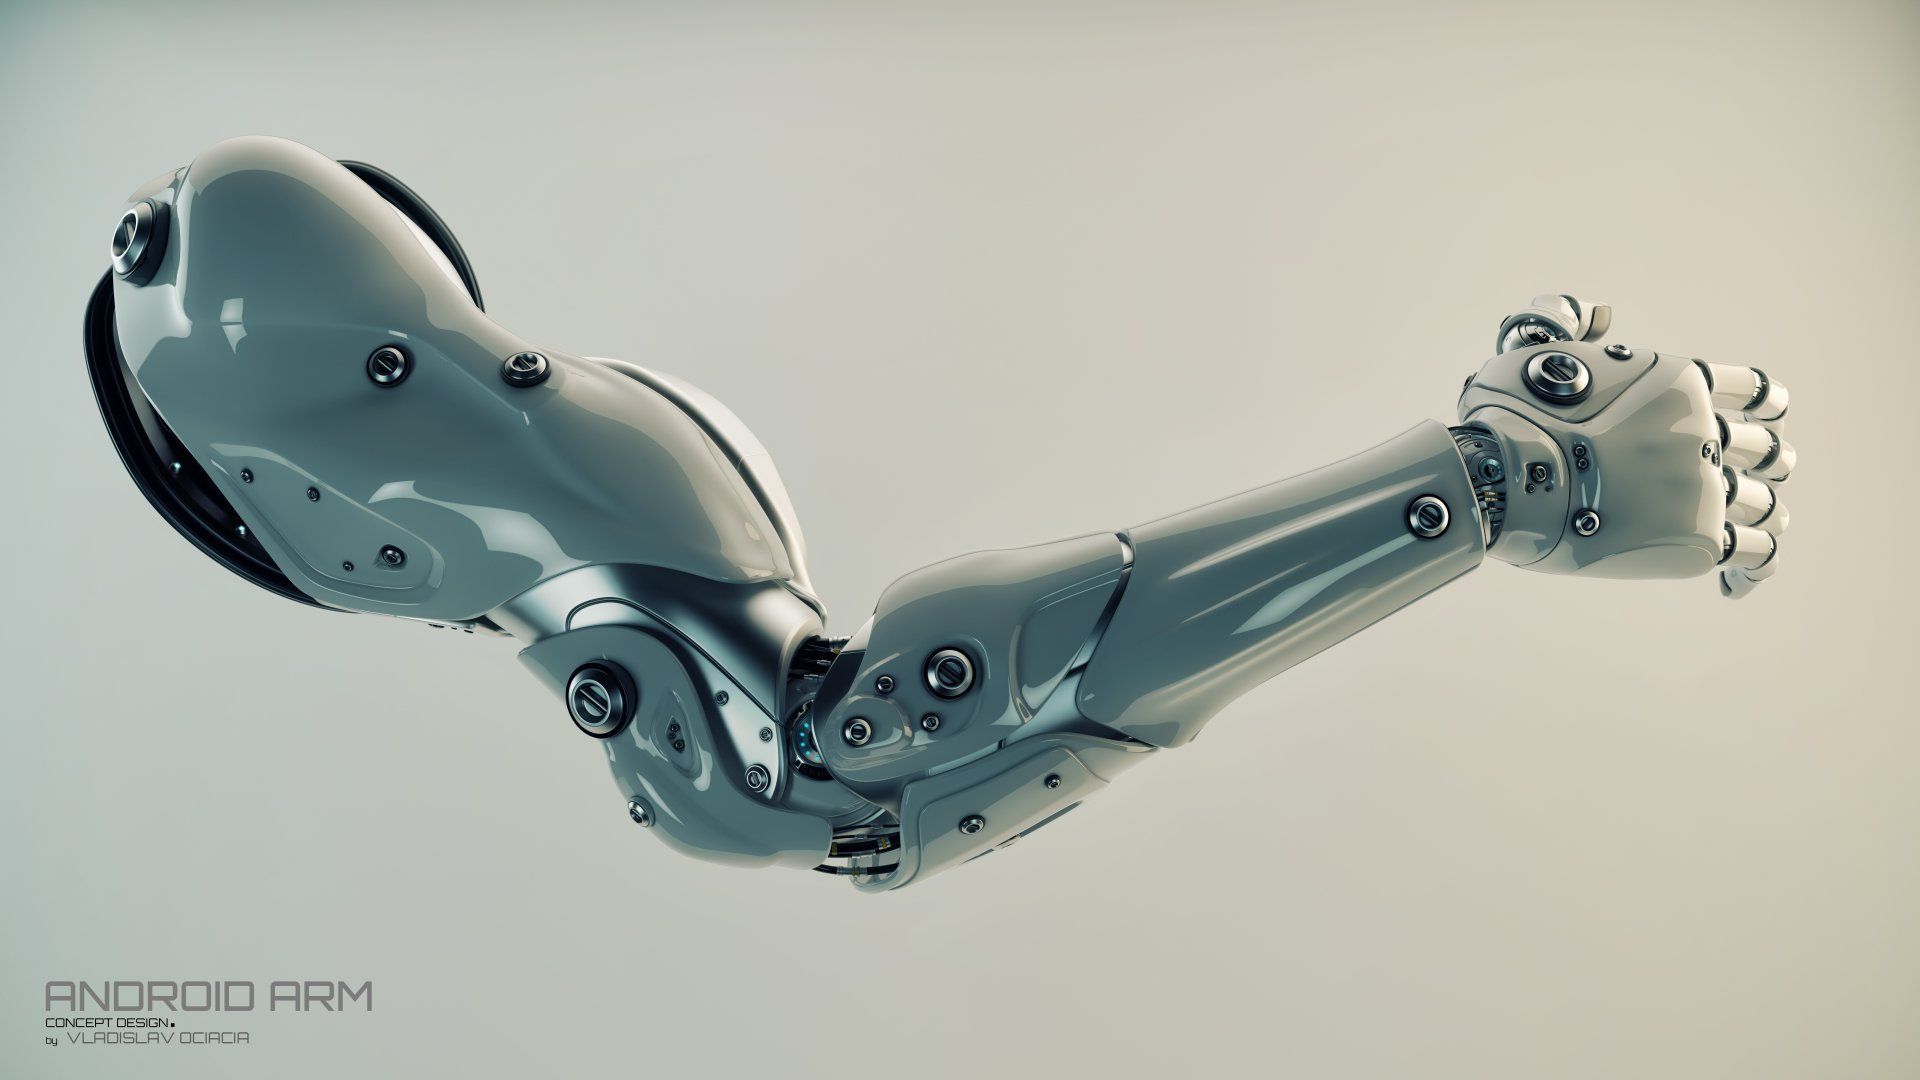 Futuristic robot, Robot arm, Robot.com